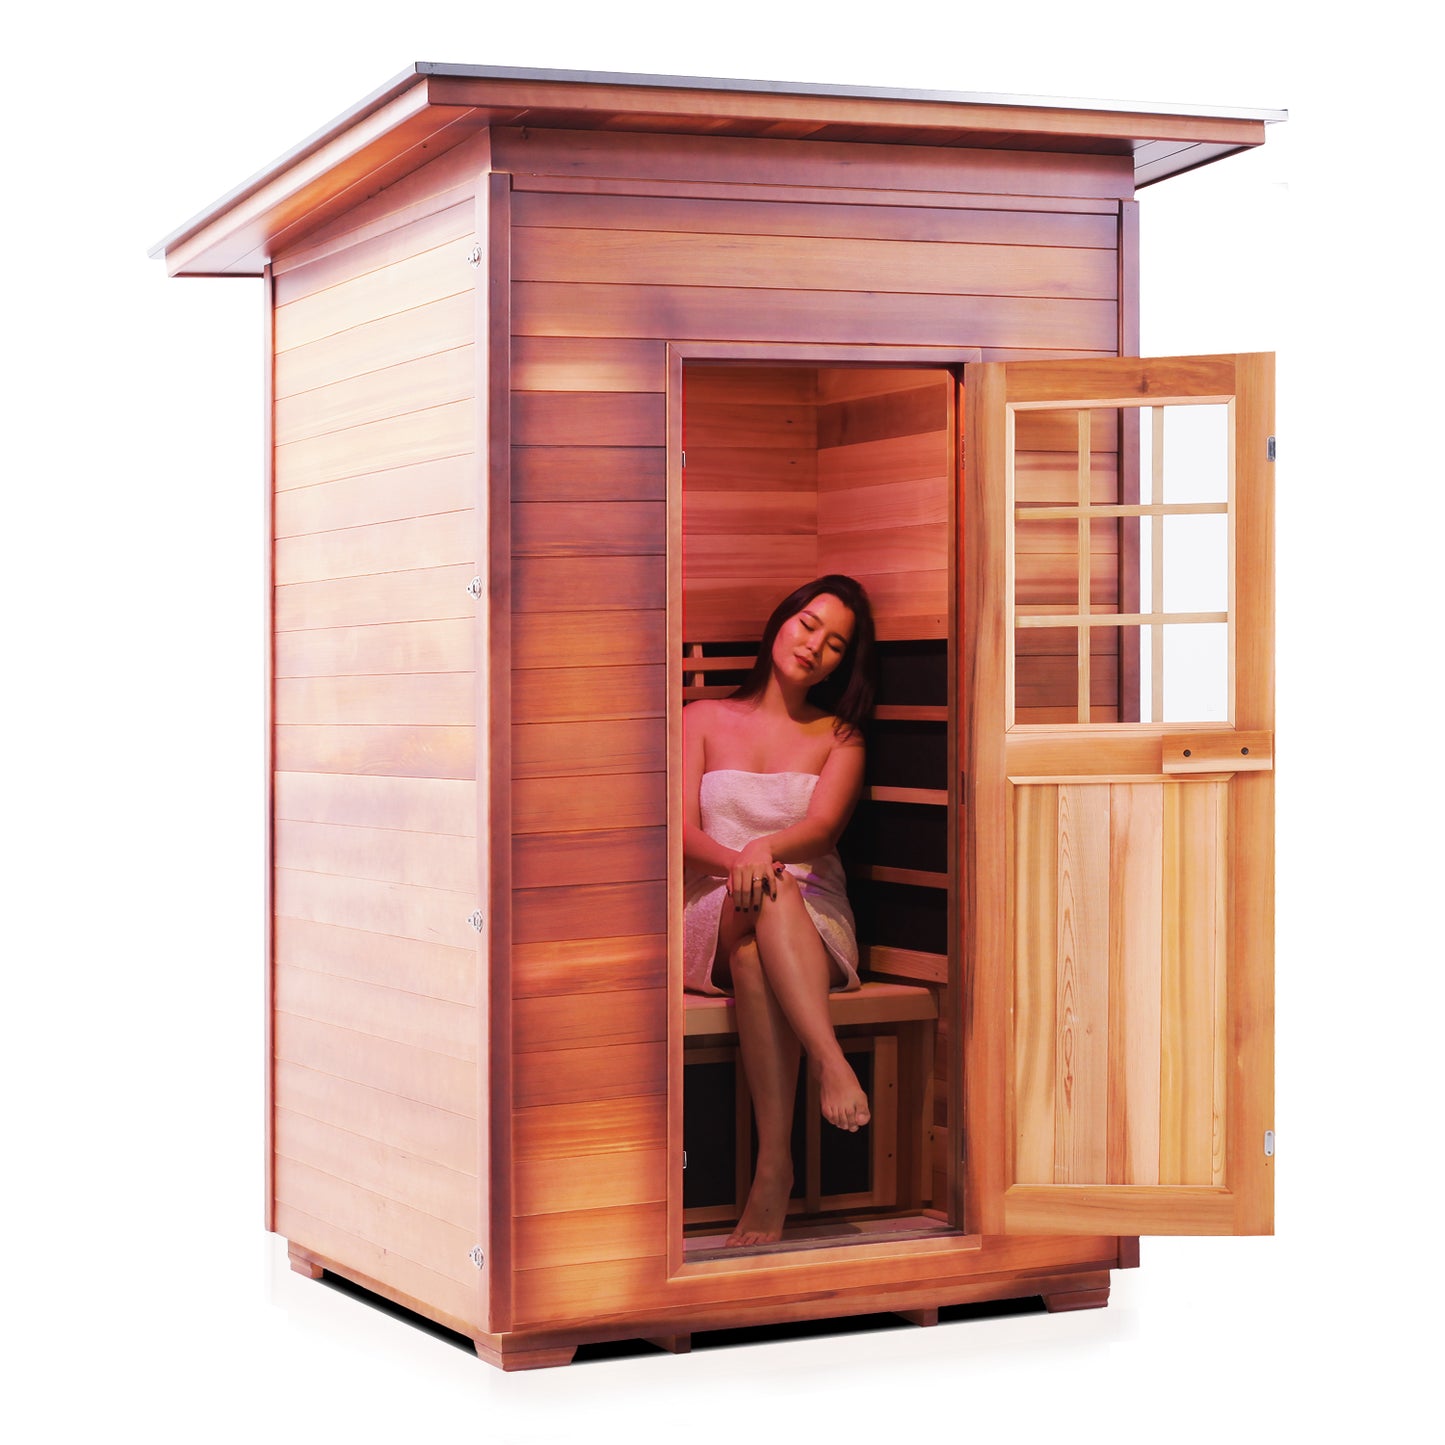 Sierra2 Outdoor Infrared Sauna